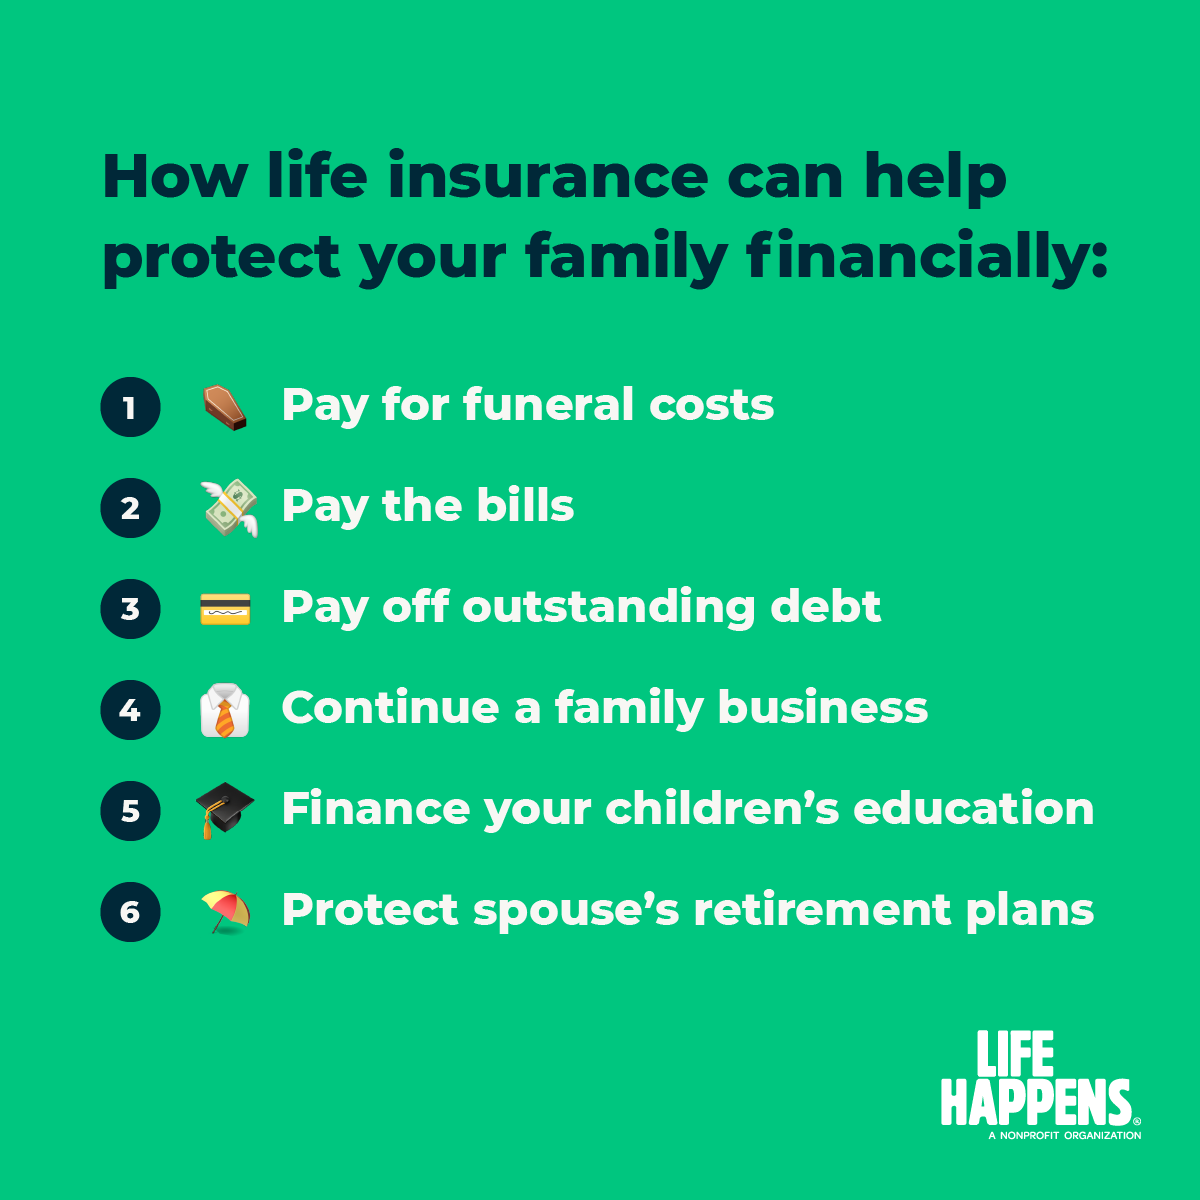 Life Insurance Awareness Materials Legal General America